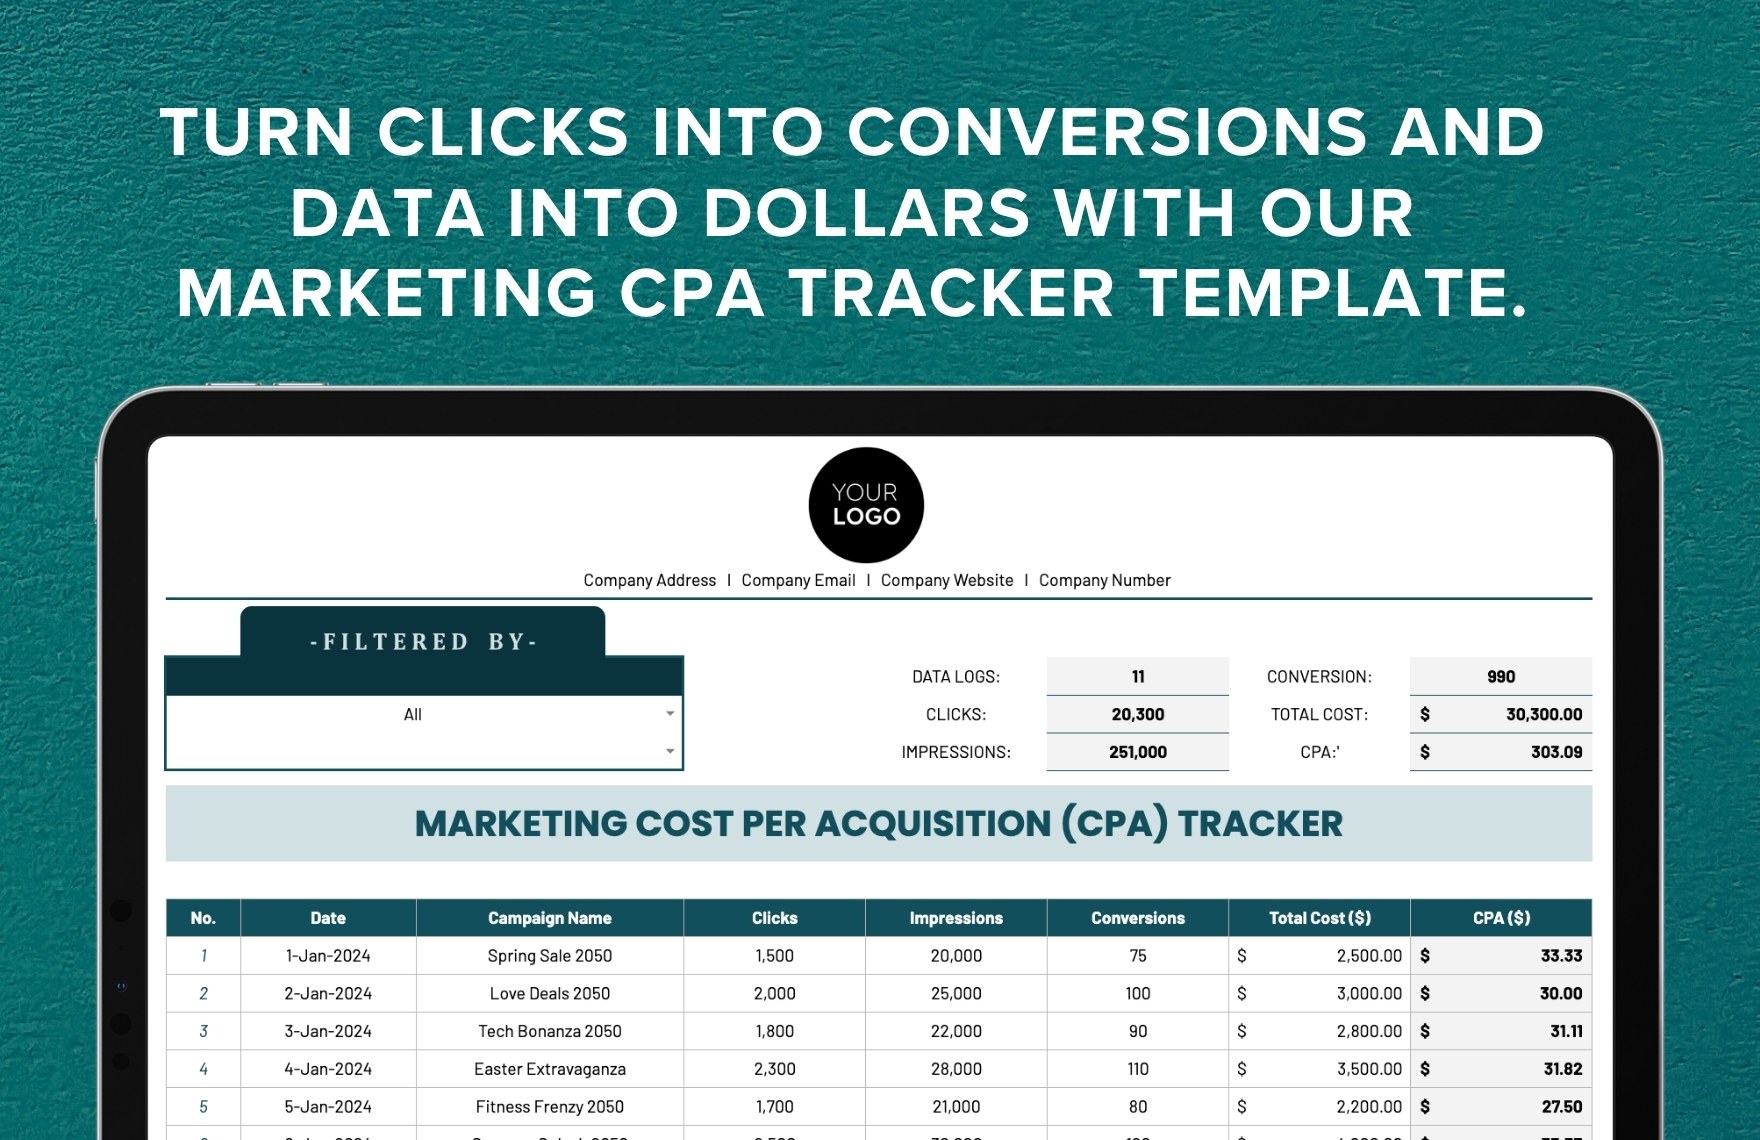 Marketing Cost Per Acquisition (CPA) Tracker Template